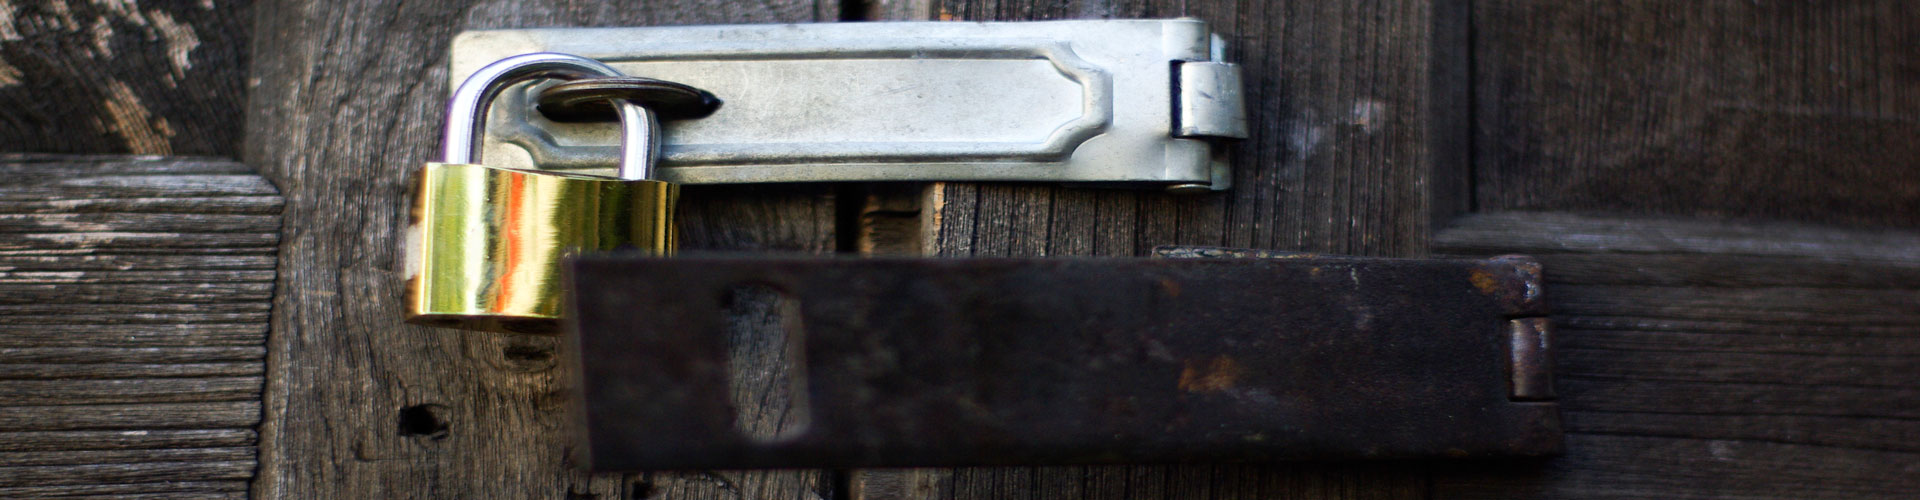 lock-key-on-vintage-wooden-door